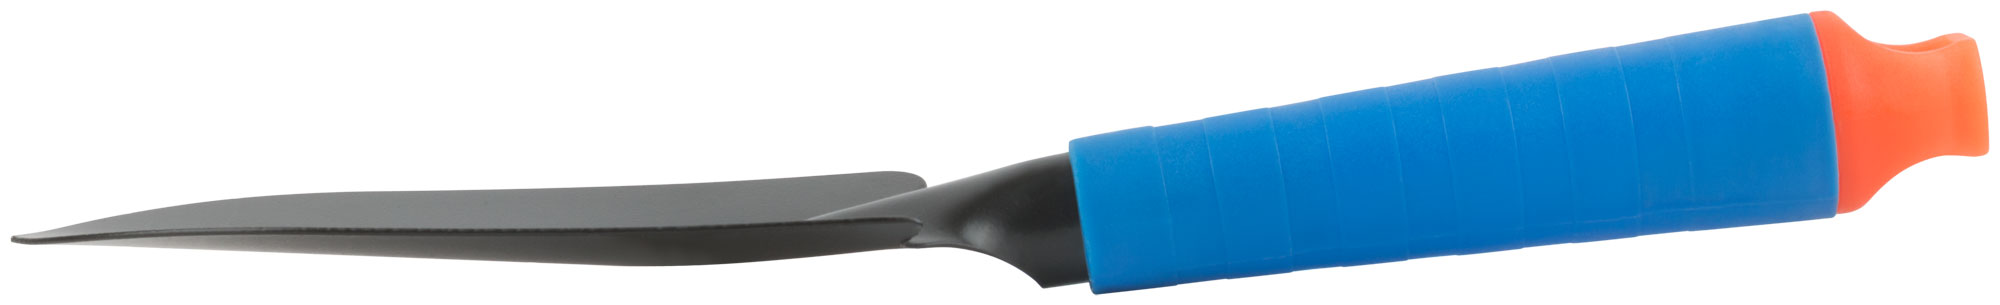 Совок посадочный широкий, синяя пластиковая ручка 280 мм